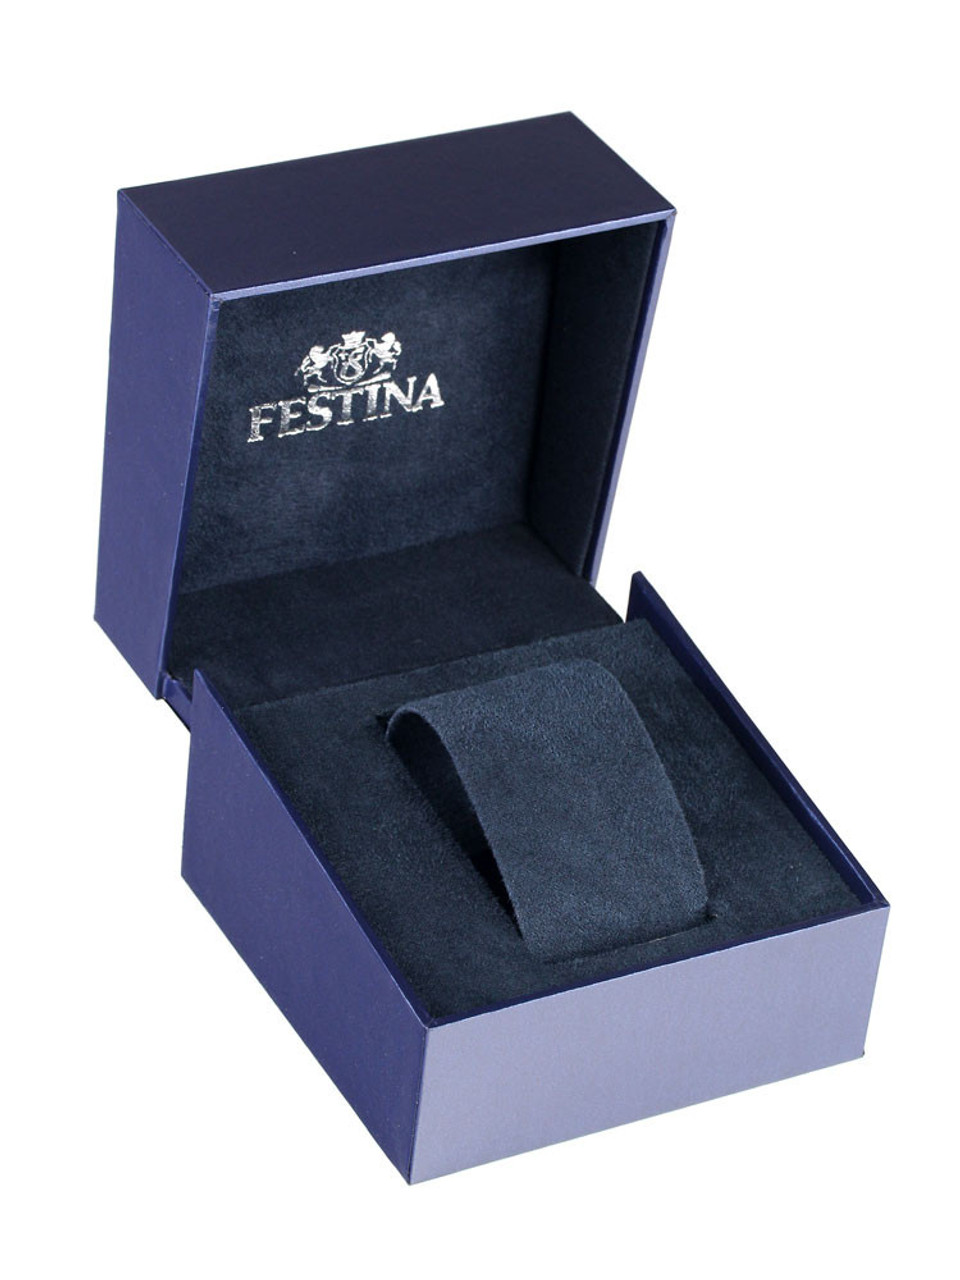 owlica Genuine F20516-1 10ATM Ceramic | - Watches 44mm Festina chronograph